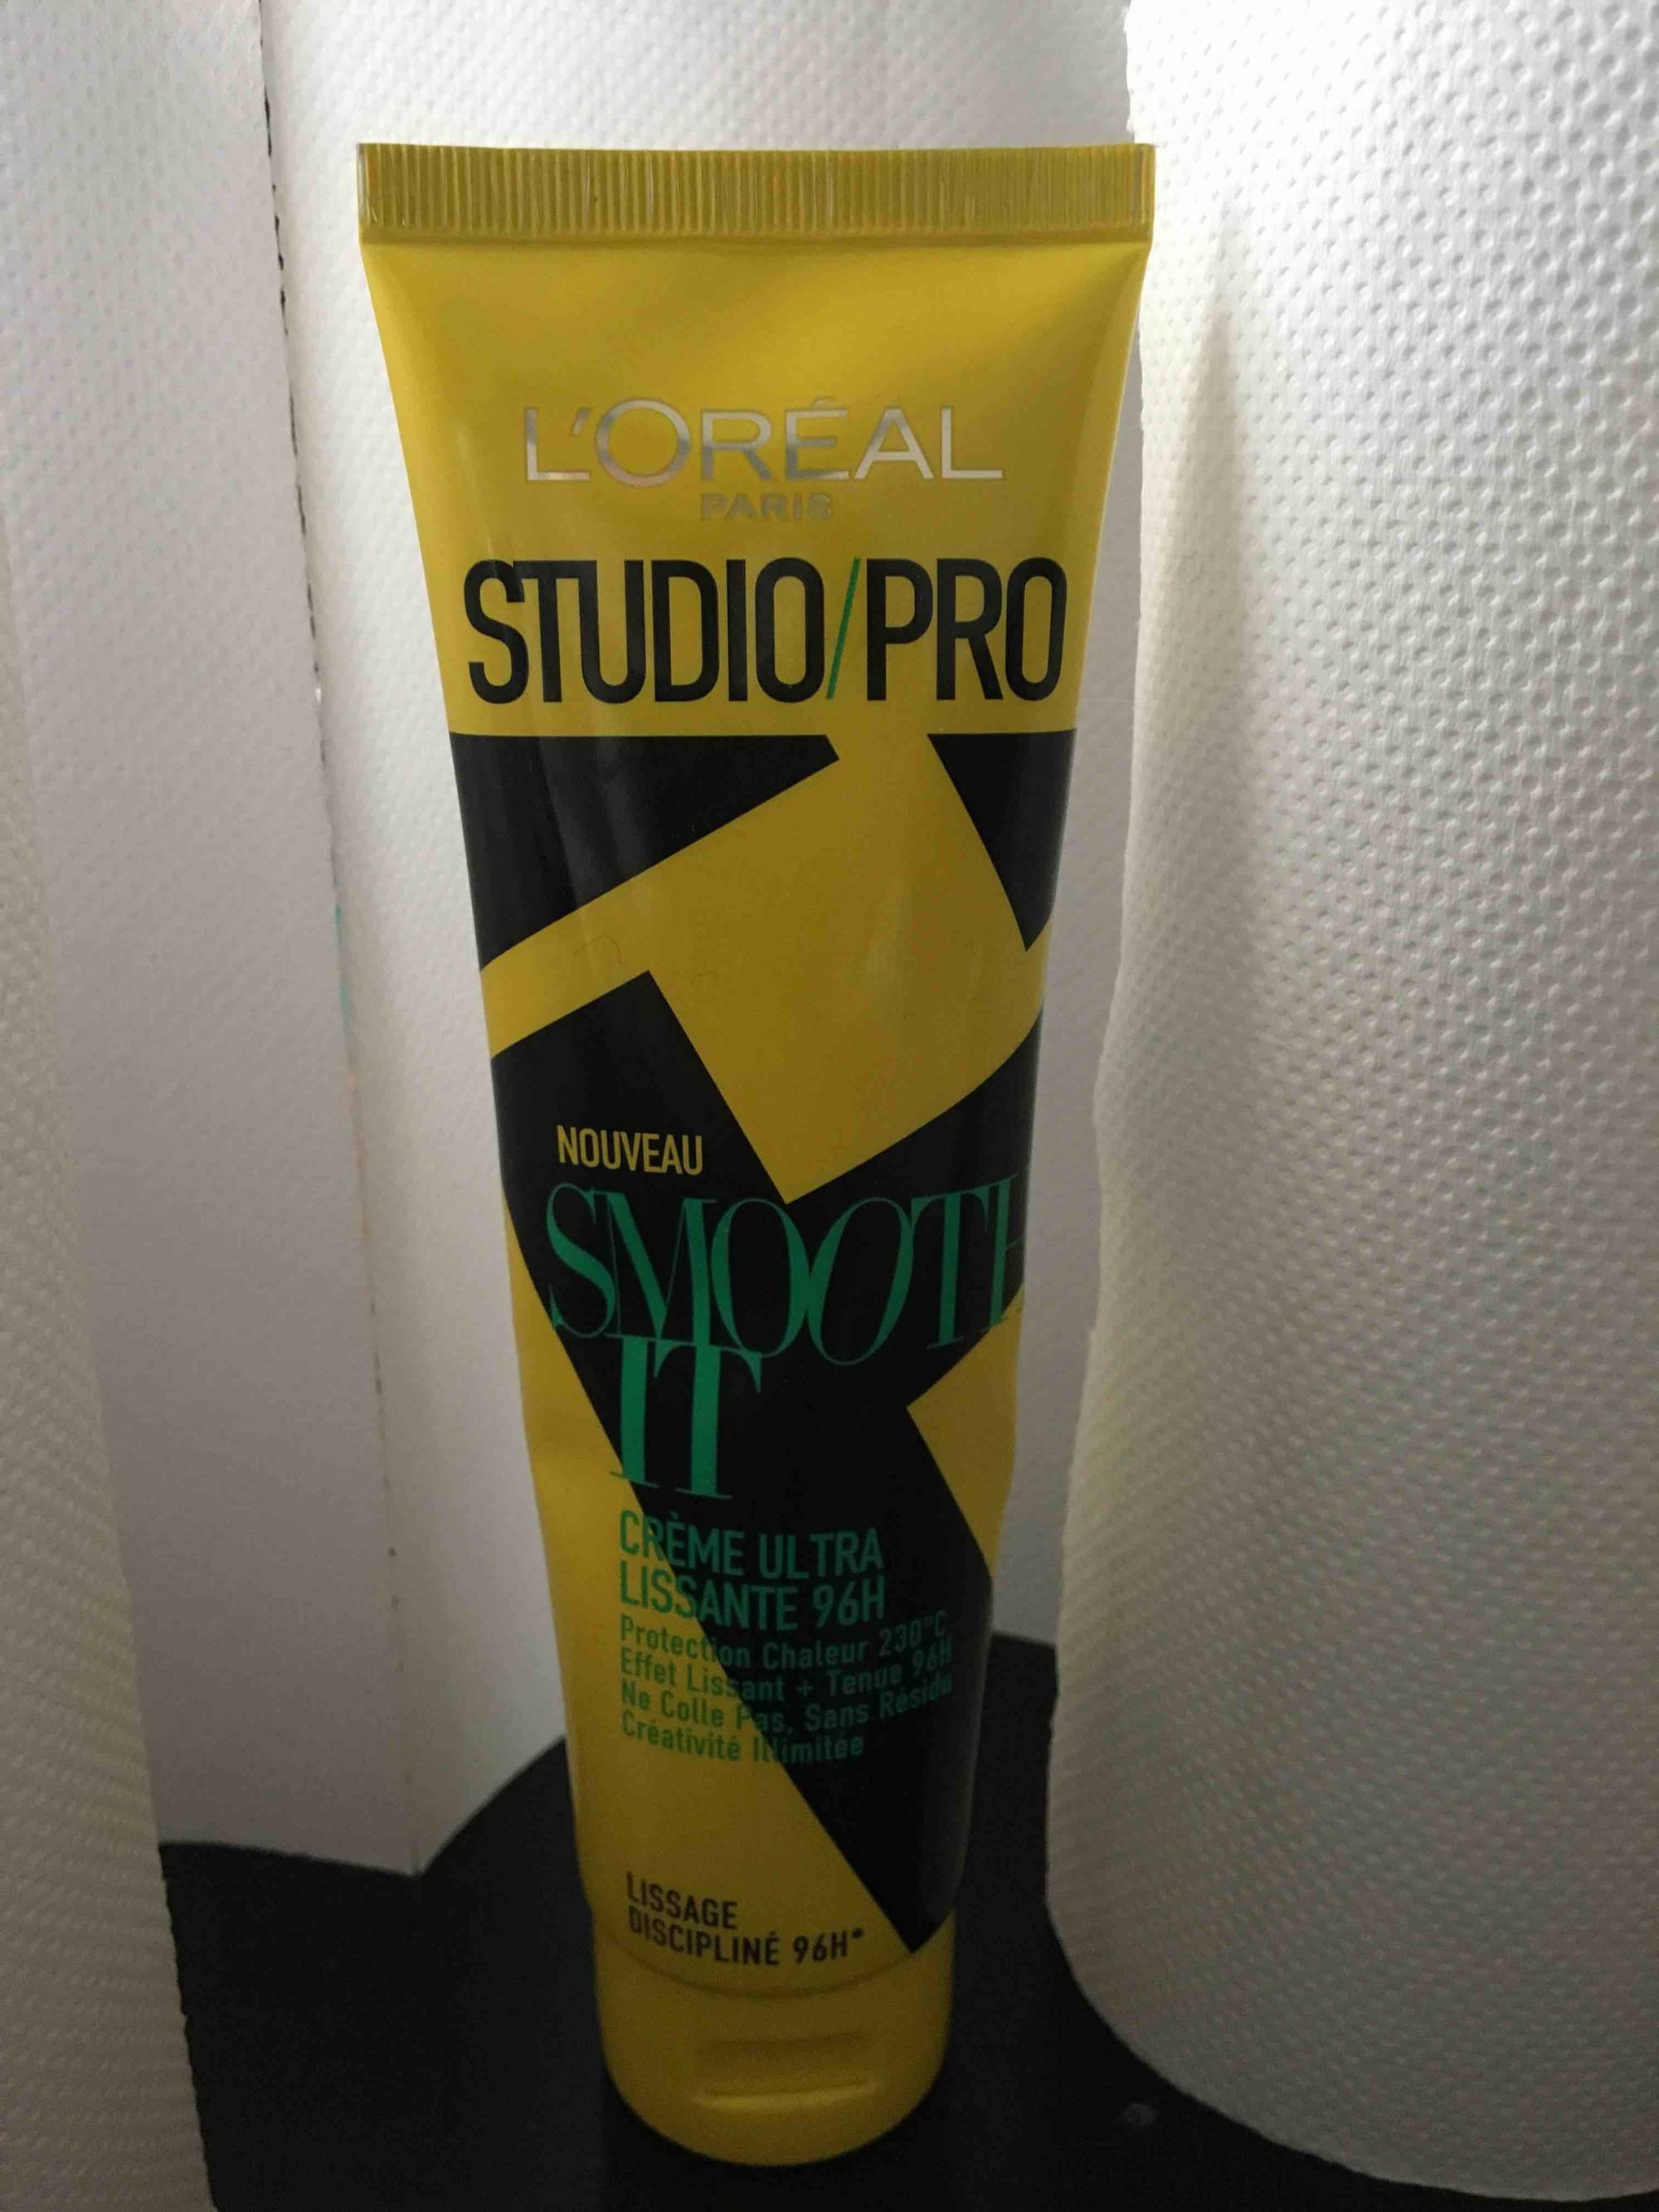 L'ORÉAL - Studio/pro Smooth it - Crème ultra lissante 96H